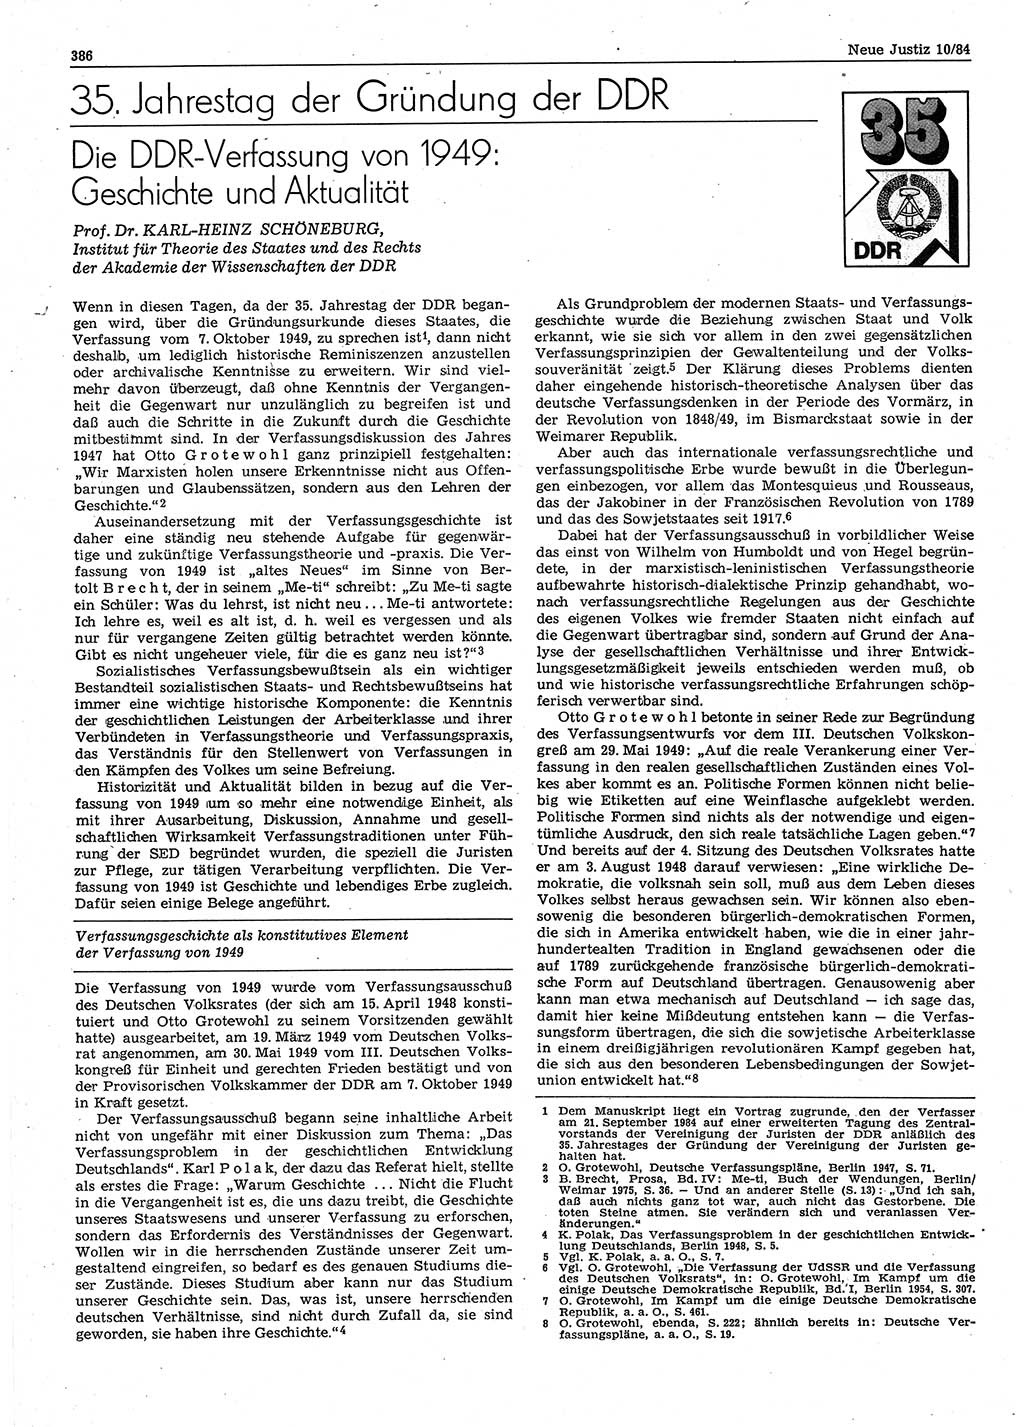 Neue Justiz (NJ), Zeitschrift für sozialistisches Recht und Gesetzlichkeit [Deutsche Demokratische Republik (DDR)], 38. Jahrgang 1984, Seite 386 (NJ DDR 1984, S. 386)